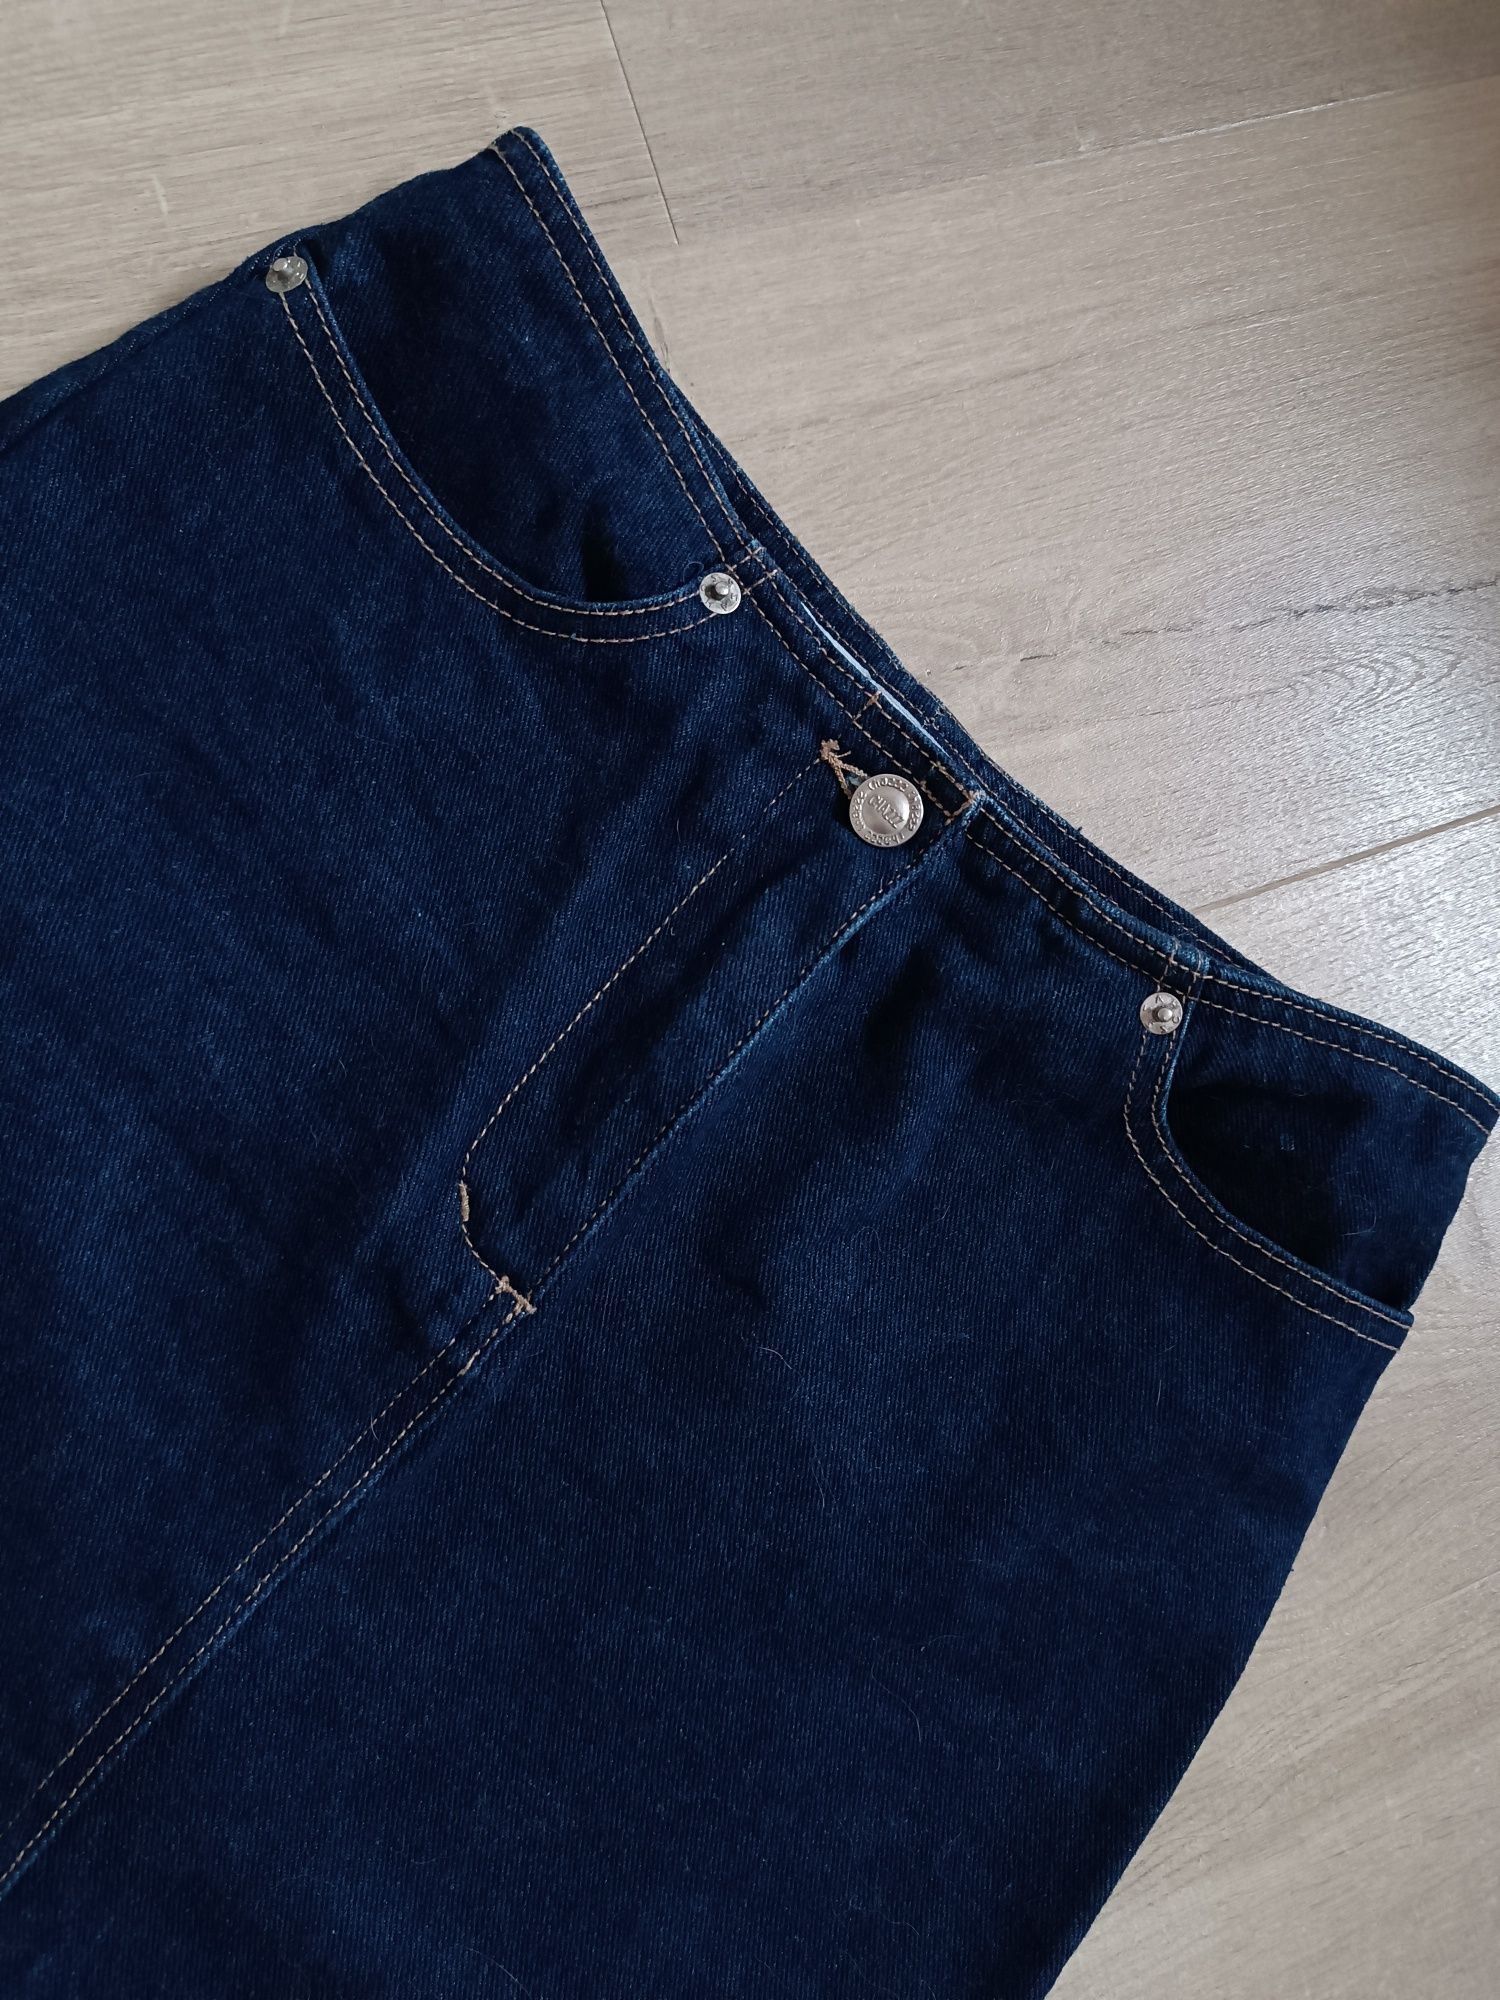 Ołówkowa spódnica jeansowa z rozcięciem midi spódnica jeans